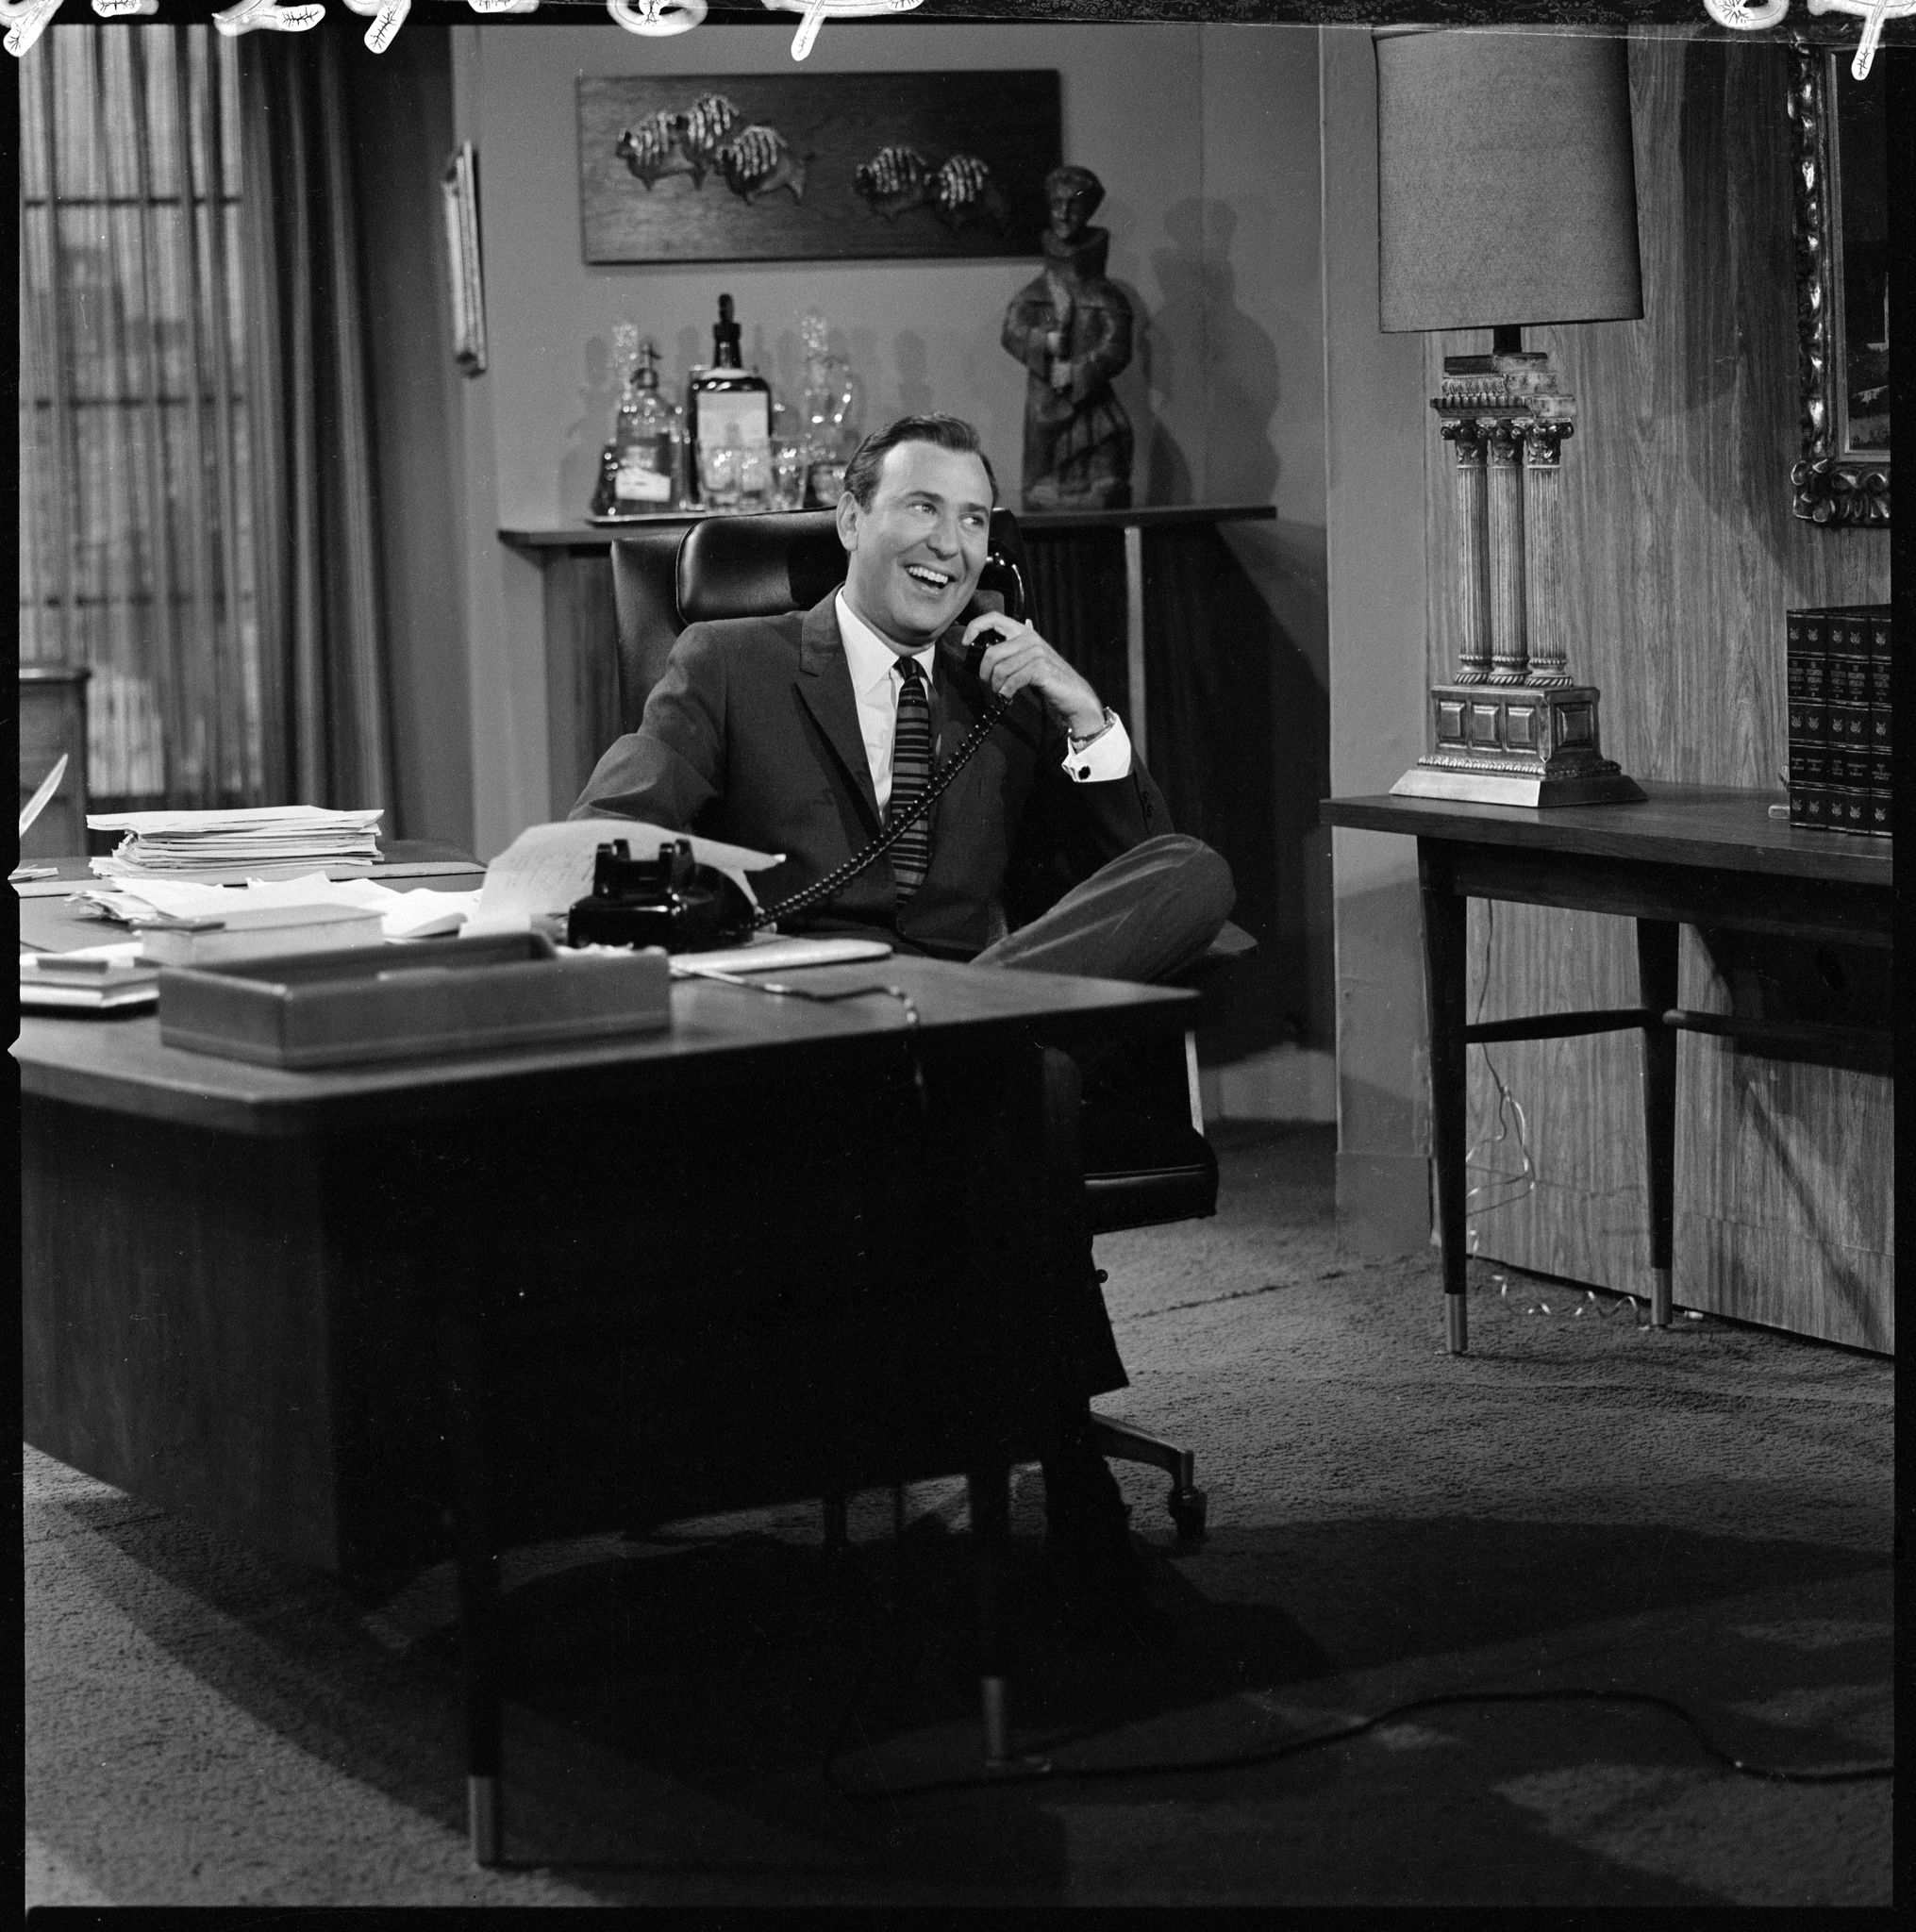 Still of Dick Van Dyke and Carl Reiner in The Dick Van Dyke Show (1961)